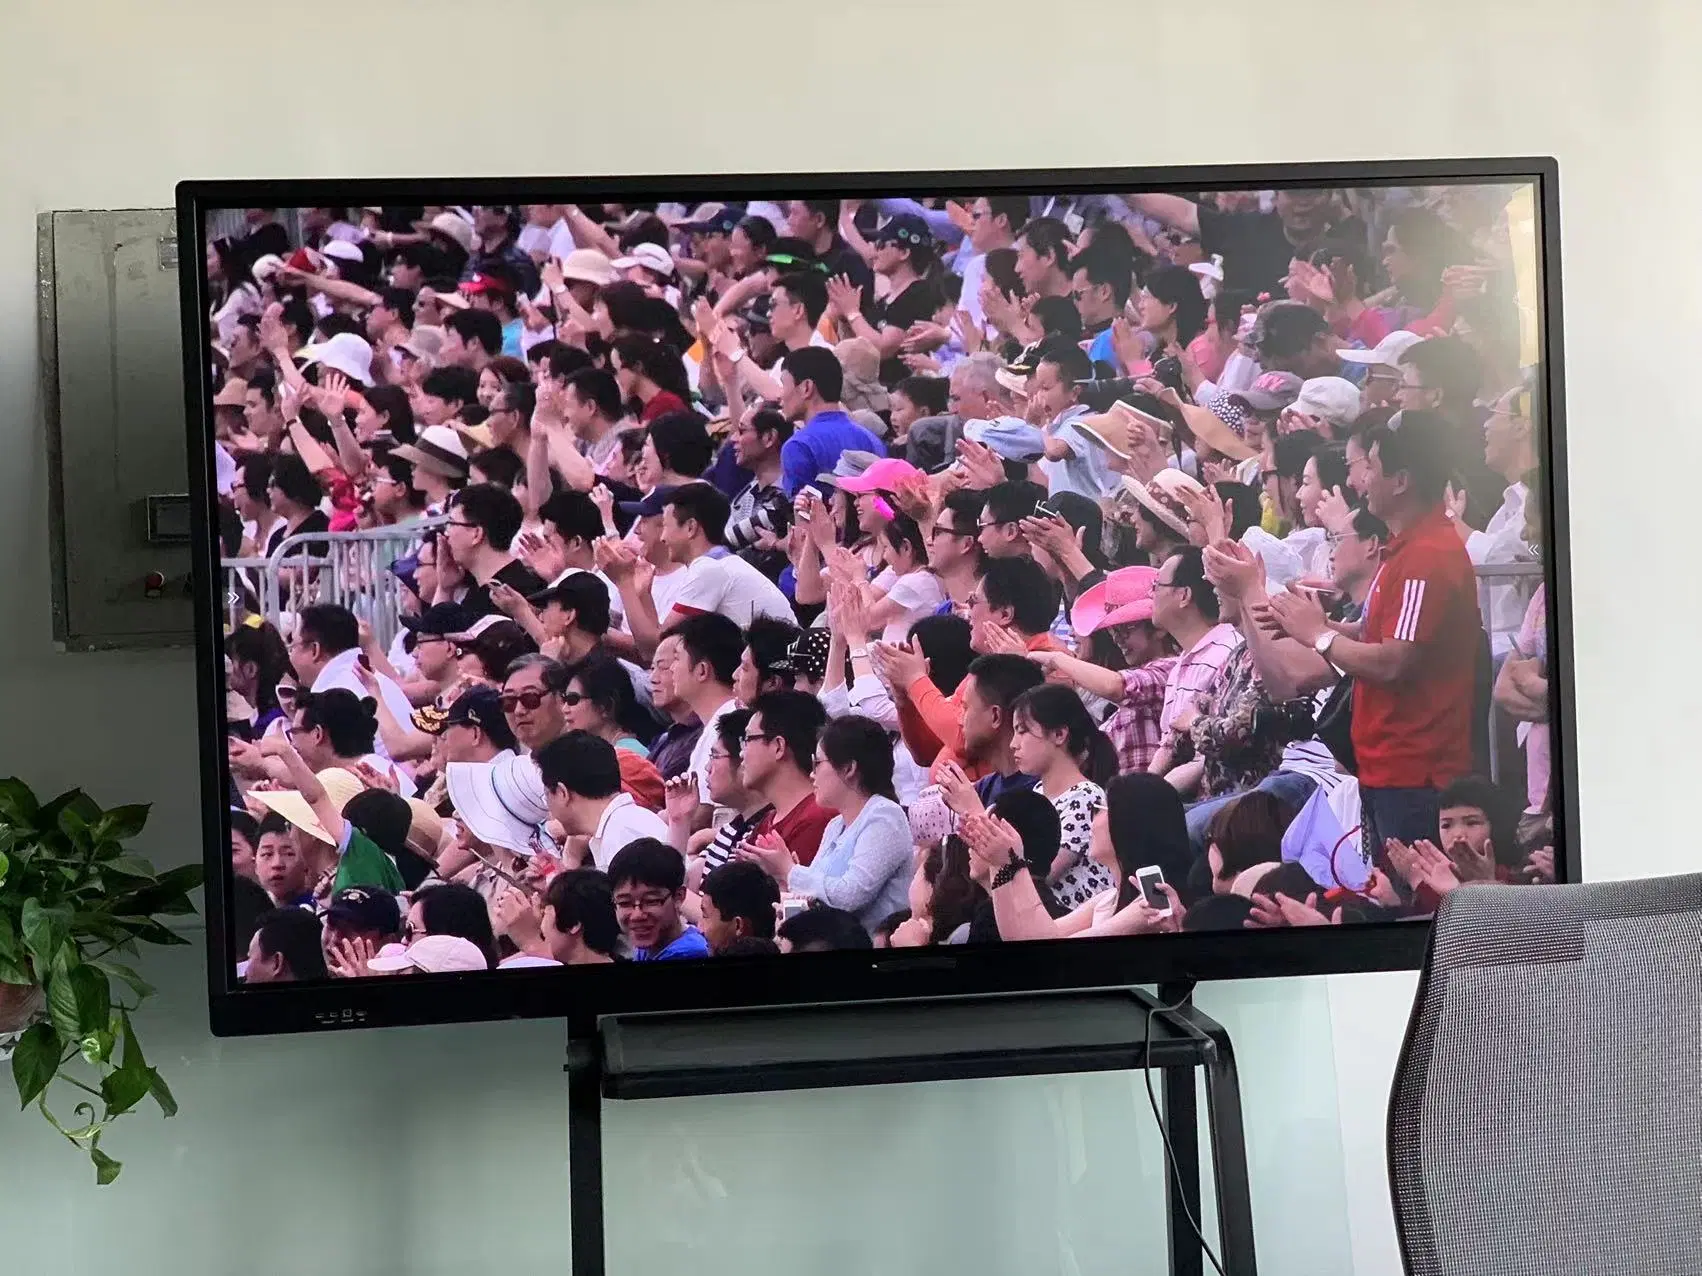 شاشة تلفزيون تفاعلية رقمية ذكية اللوحة البيضاء قياس 75 بوصة لـ المؤتمر